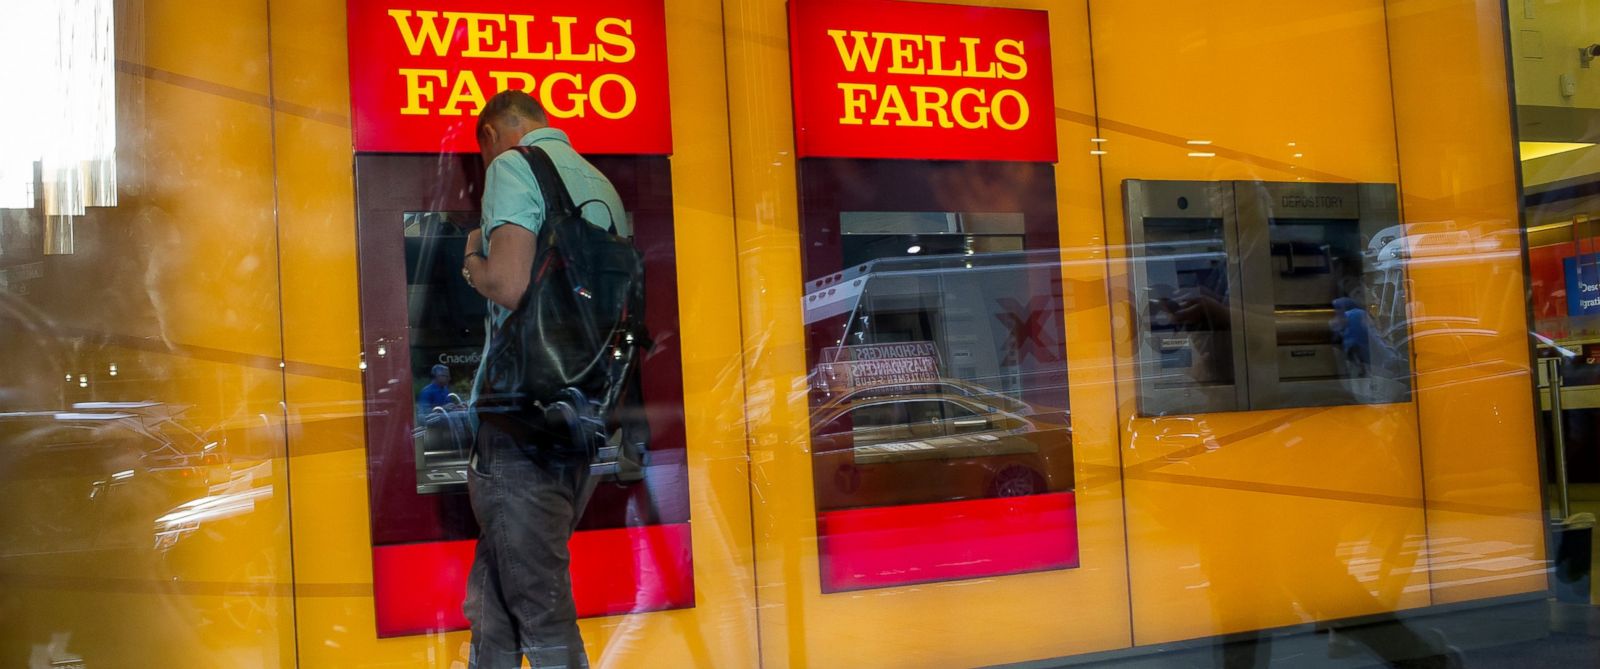 Wells Fargo fires over 5k workers over account scandals 